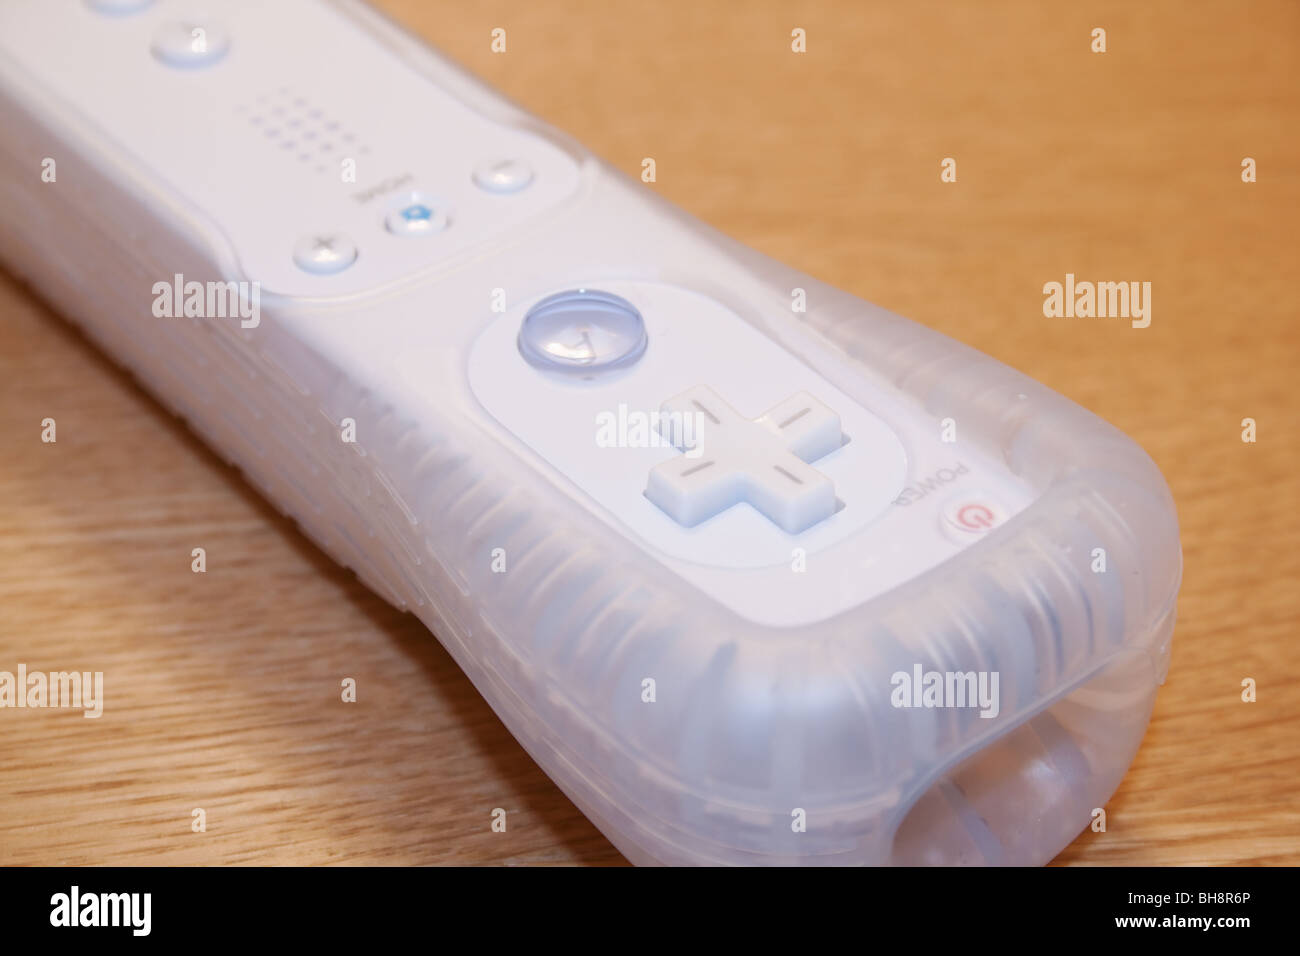 Nintendo Wii auricular en el manguito de goma en la superficie de madera Foto de stock